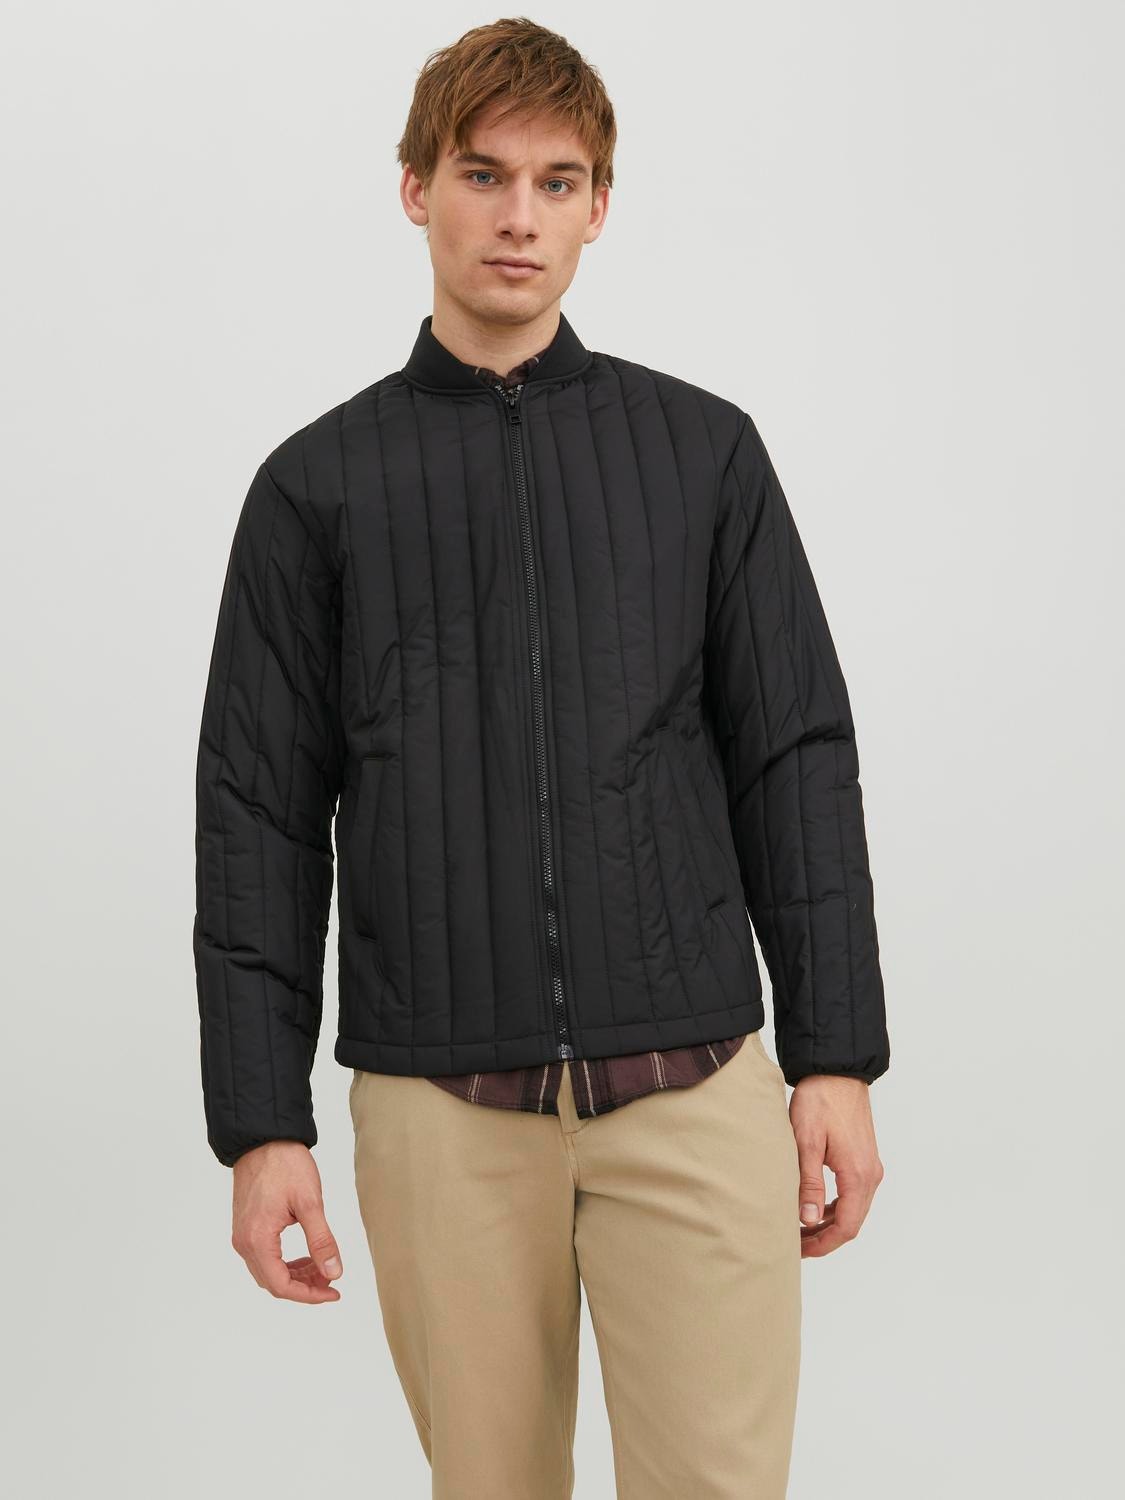 Quilted jacket with 40% discount! | Jack & Jones®